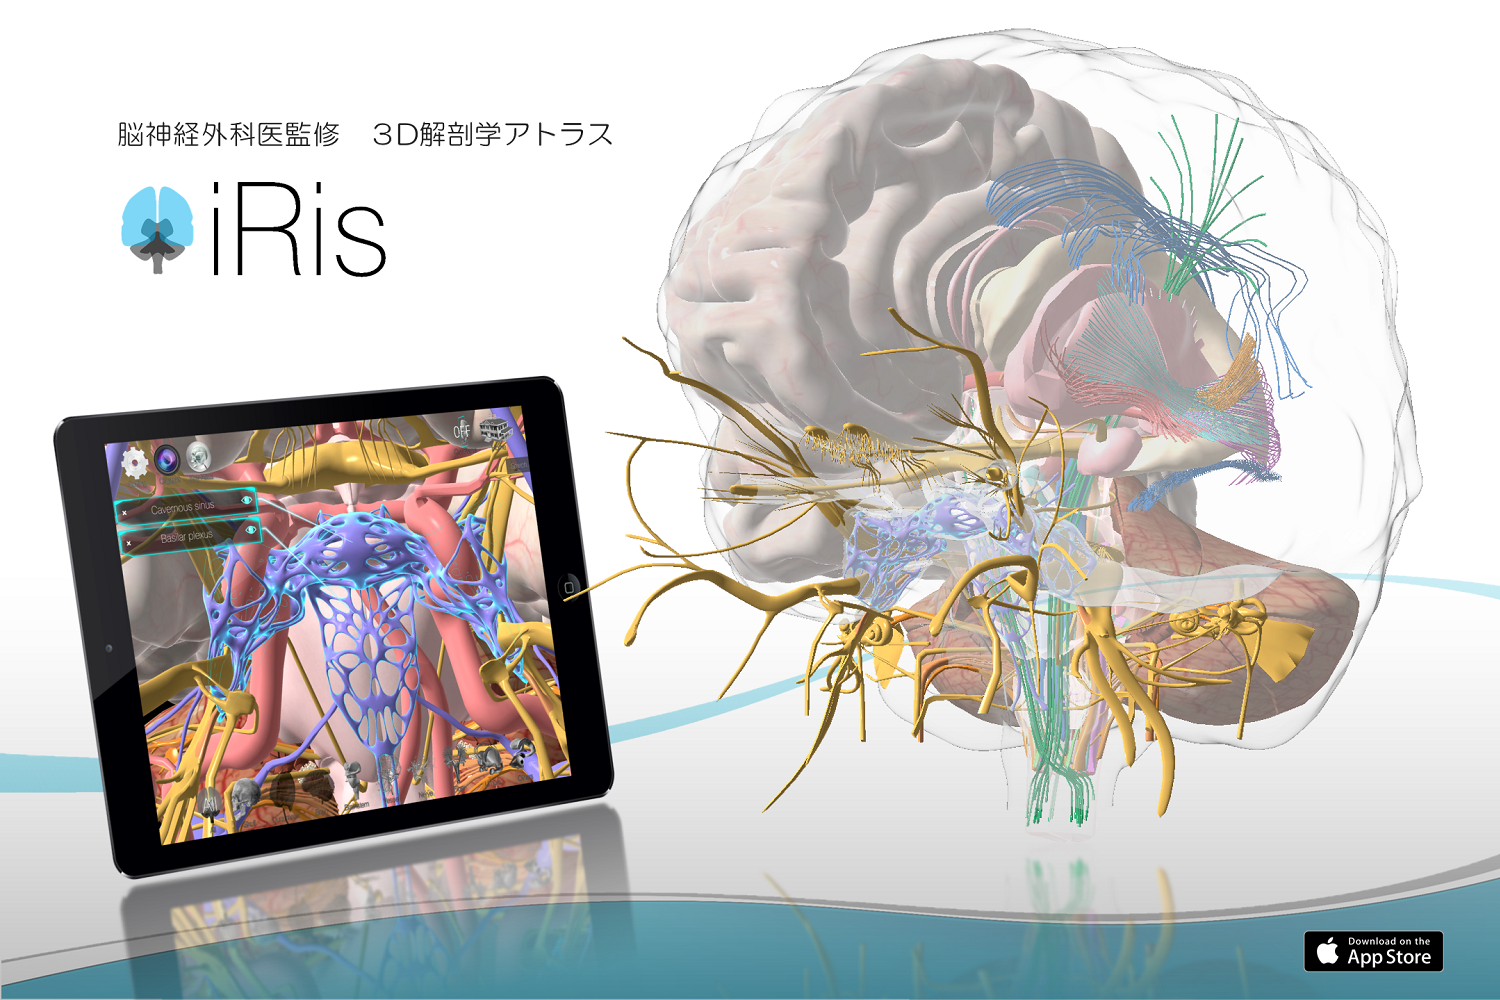 3D Anatomy Atlas: iRis